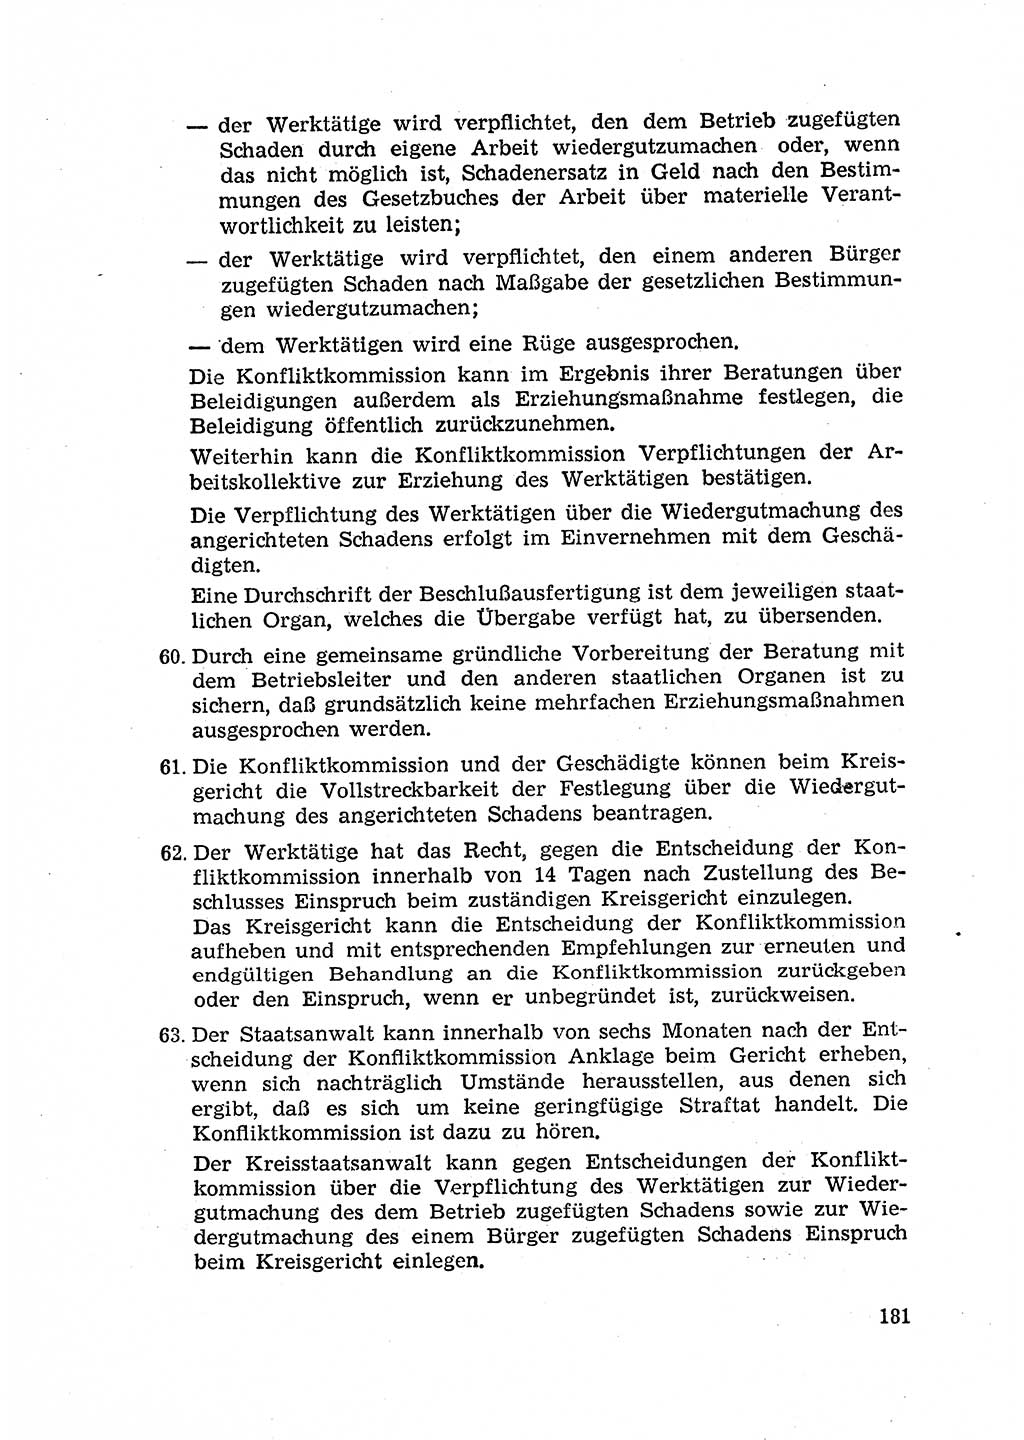 Rechtspflegeerlaß [Deutsche Demokratische Republik (DDR)] 1963, Seite 181 (R.-Pfl.-Erl. DDR 1963, S. 181)